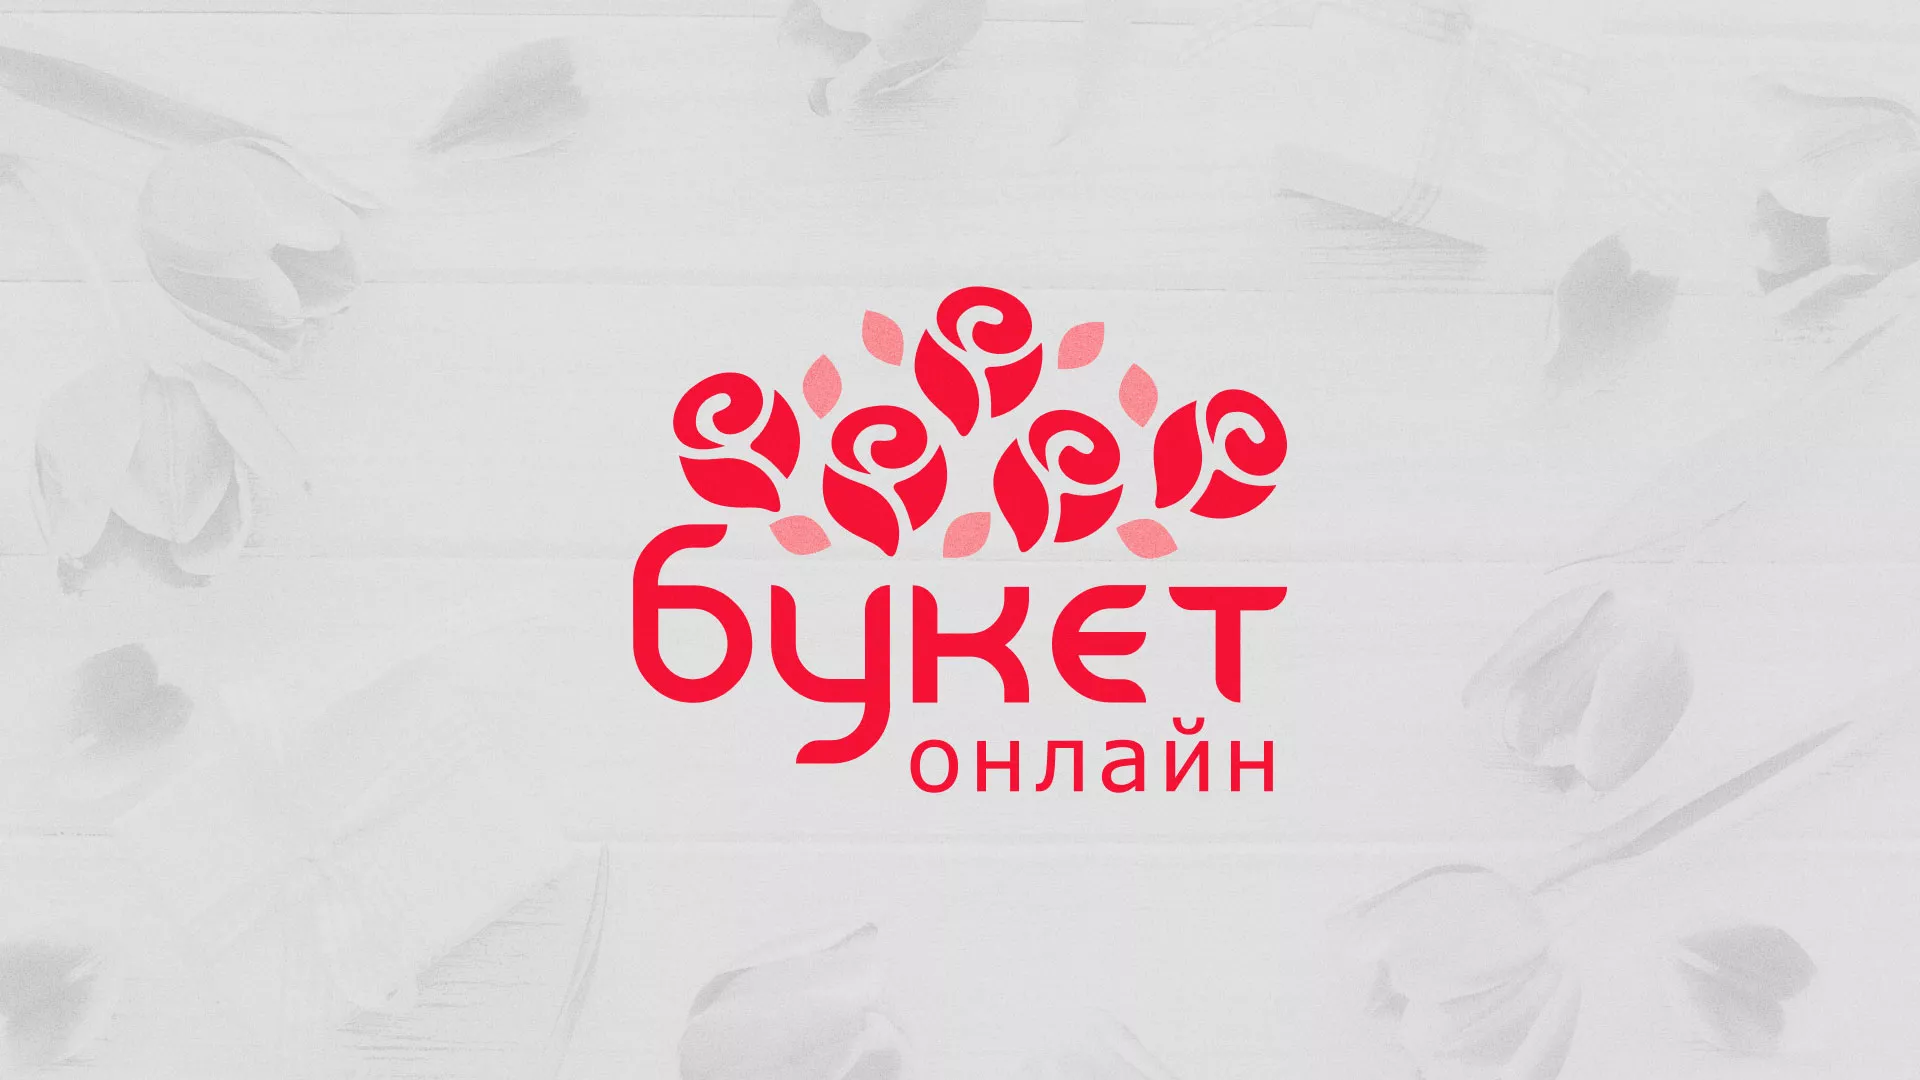 Создание интернет-магазина «Букет-онлайн» по цветам в Шацке